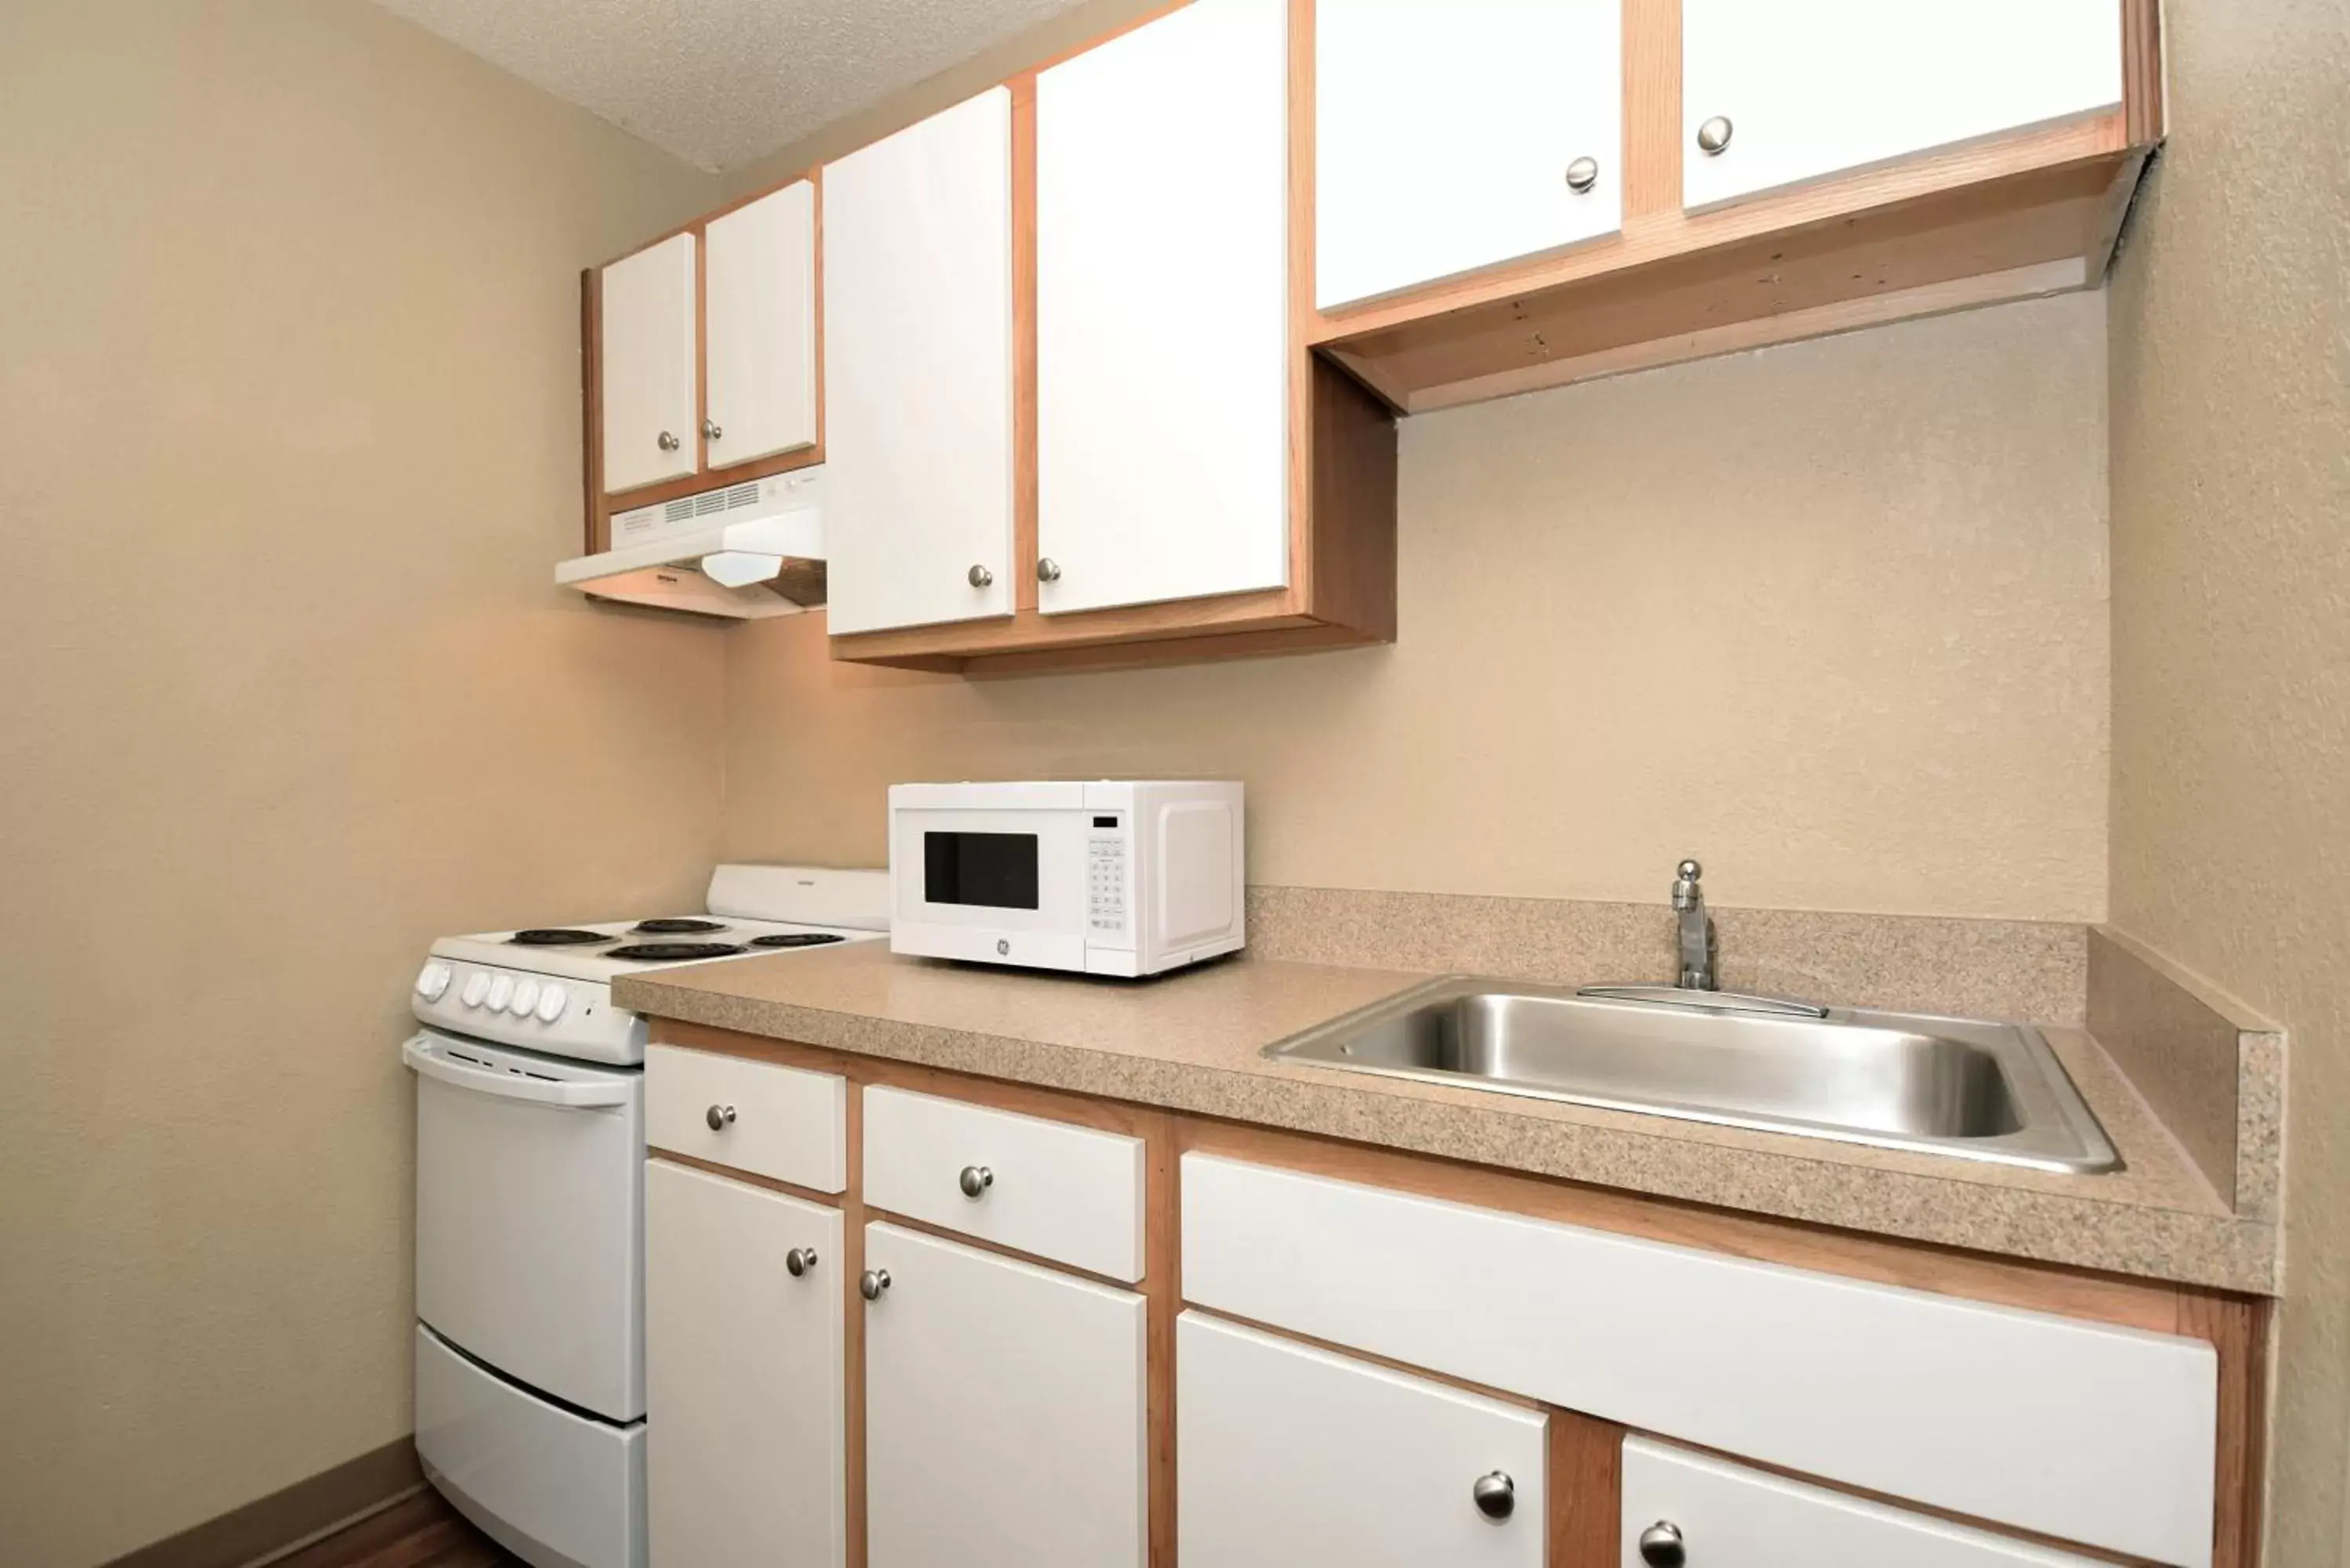 Kitchen or kitchenette, Kitchen/Kitchenette in Extended Stay America Suites - Des Moines - West Des Moines